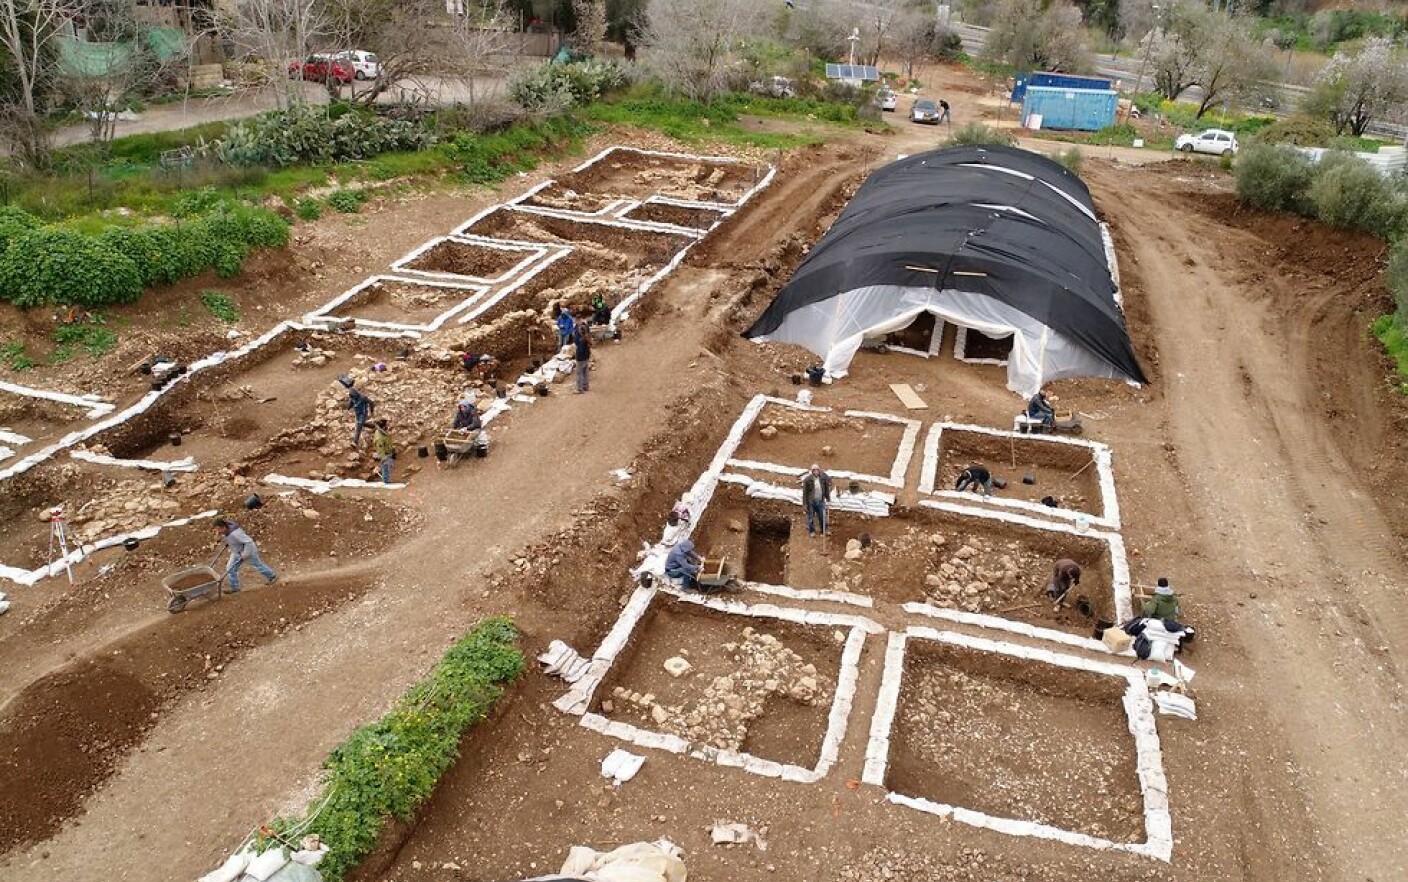 Una dintre cele mai mari așezări din Epoca de Piatră, descoperită în Israel. Are 9.000 de ani - 1